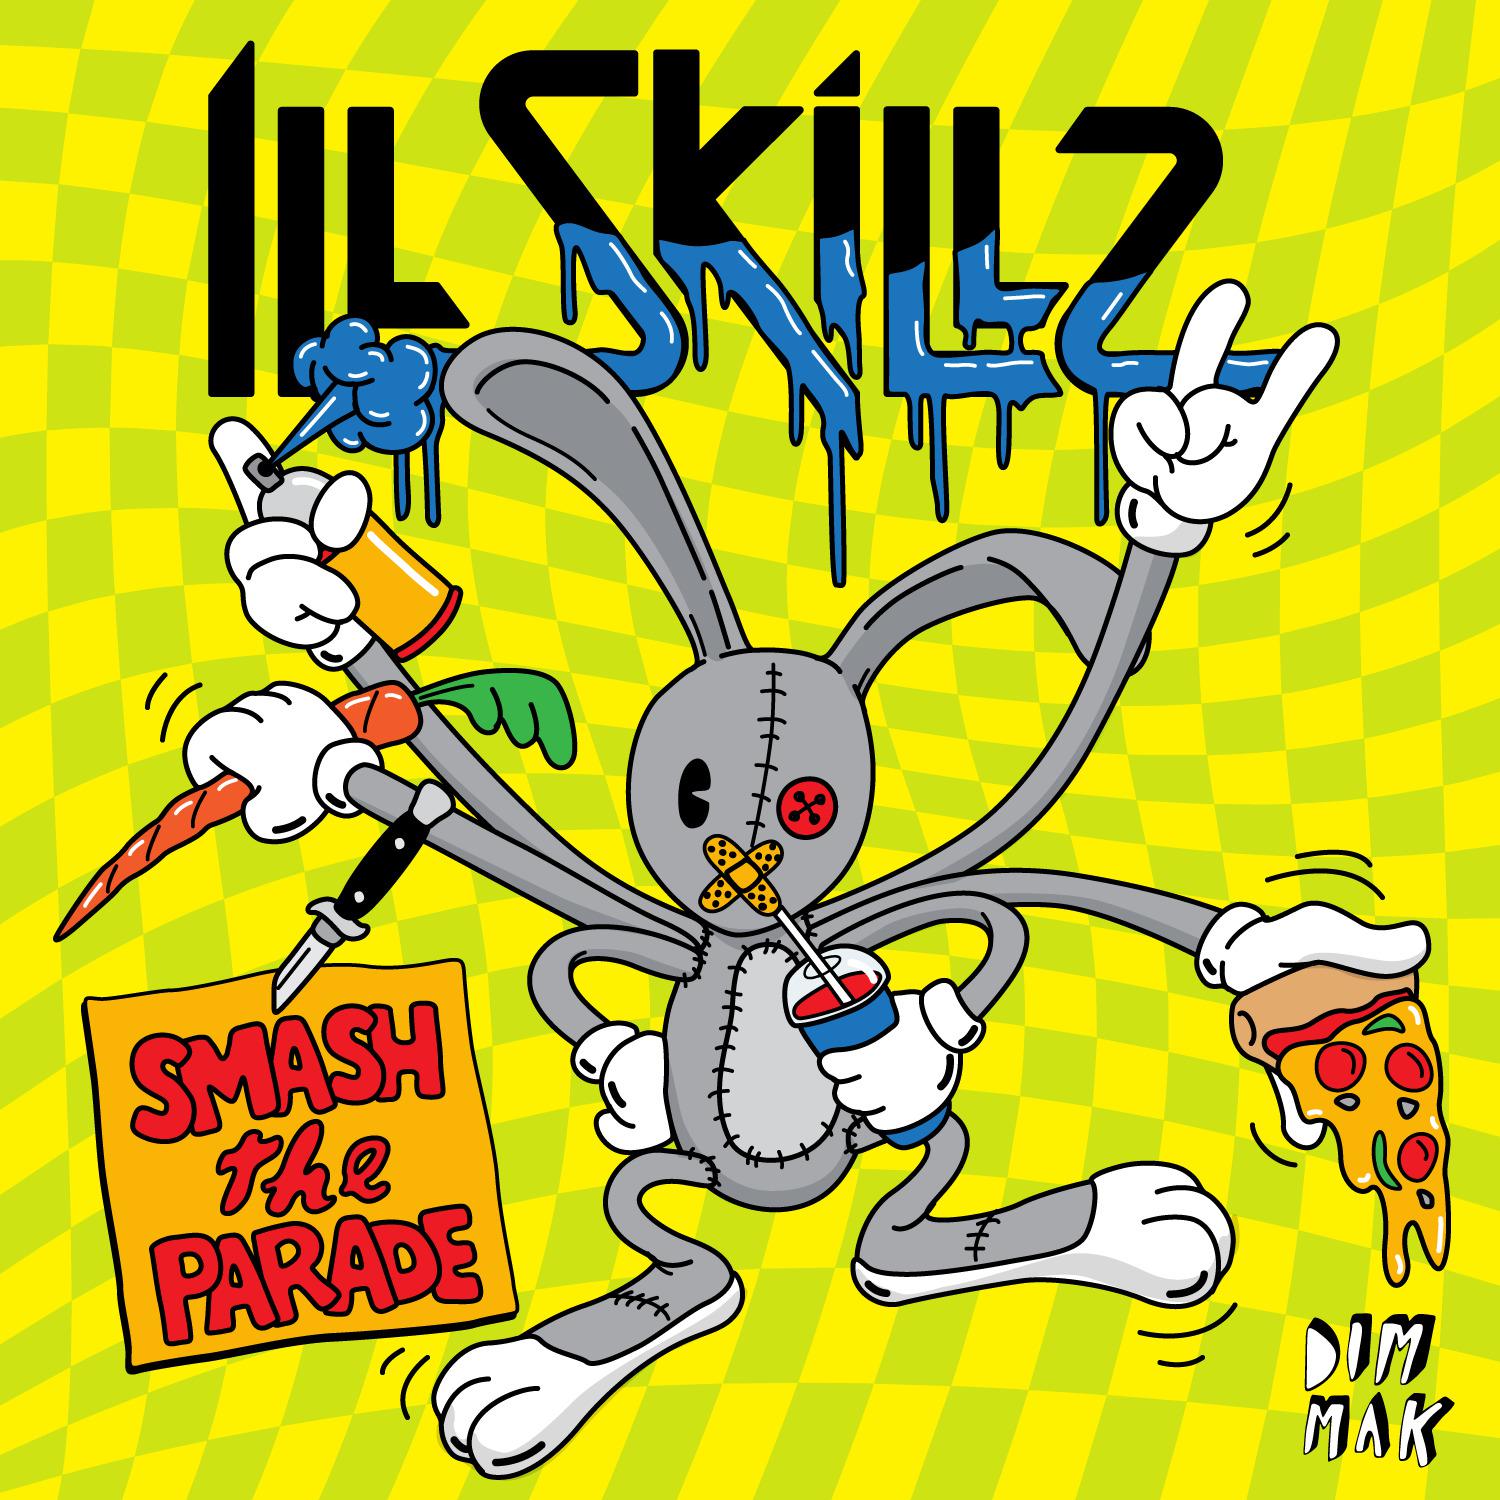 Illskillz - Crash